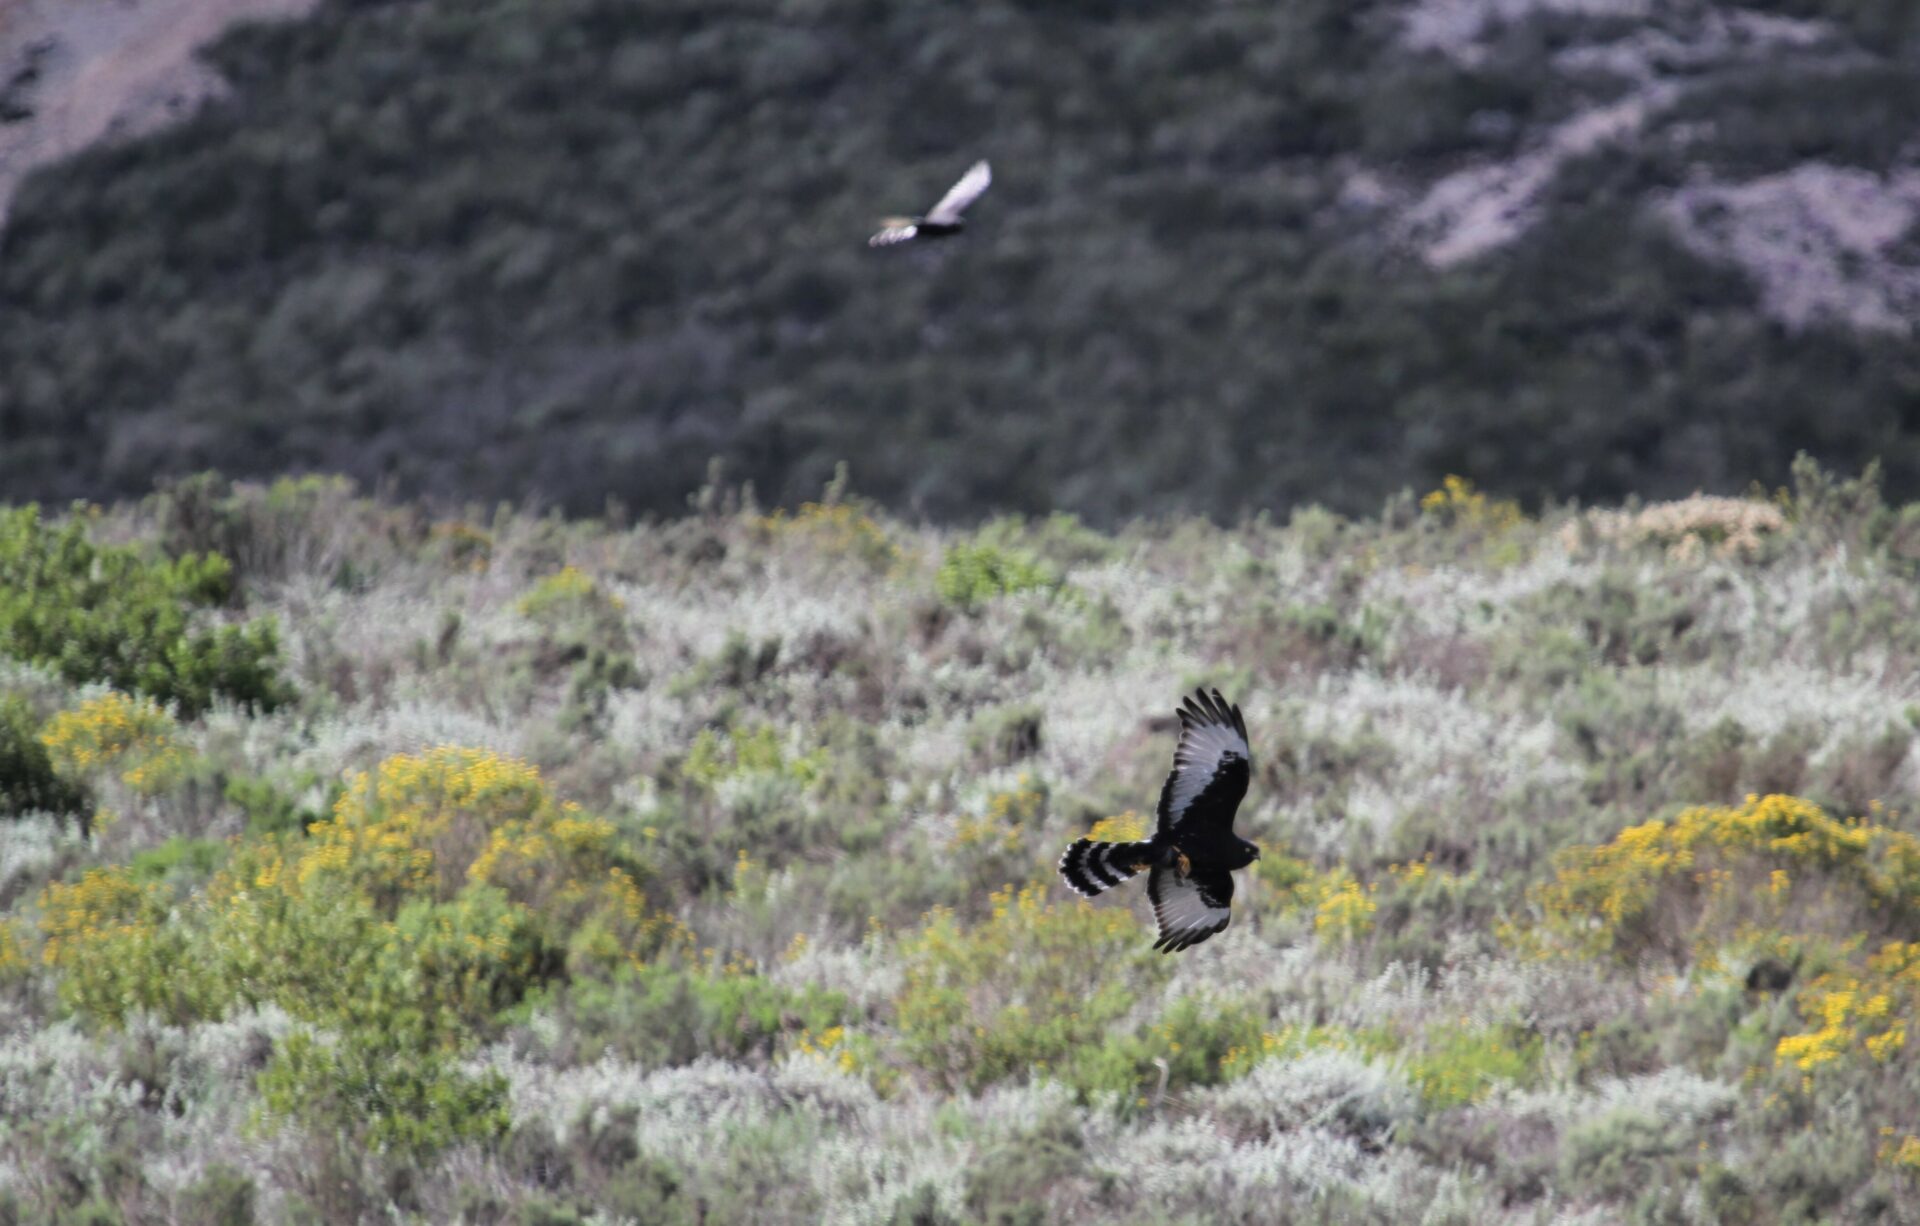 Black harrier in flight